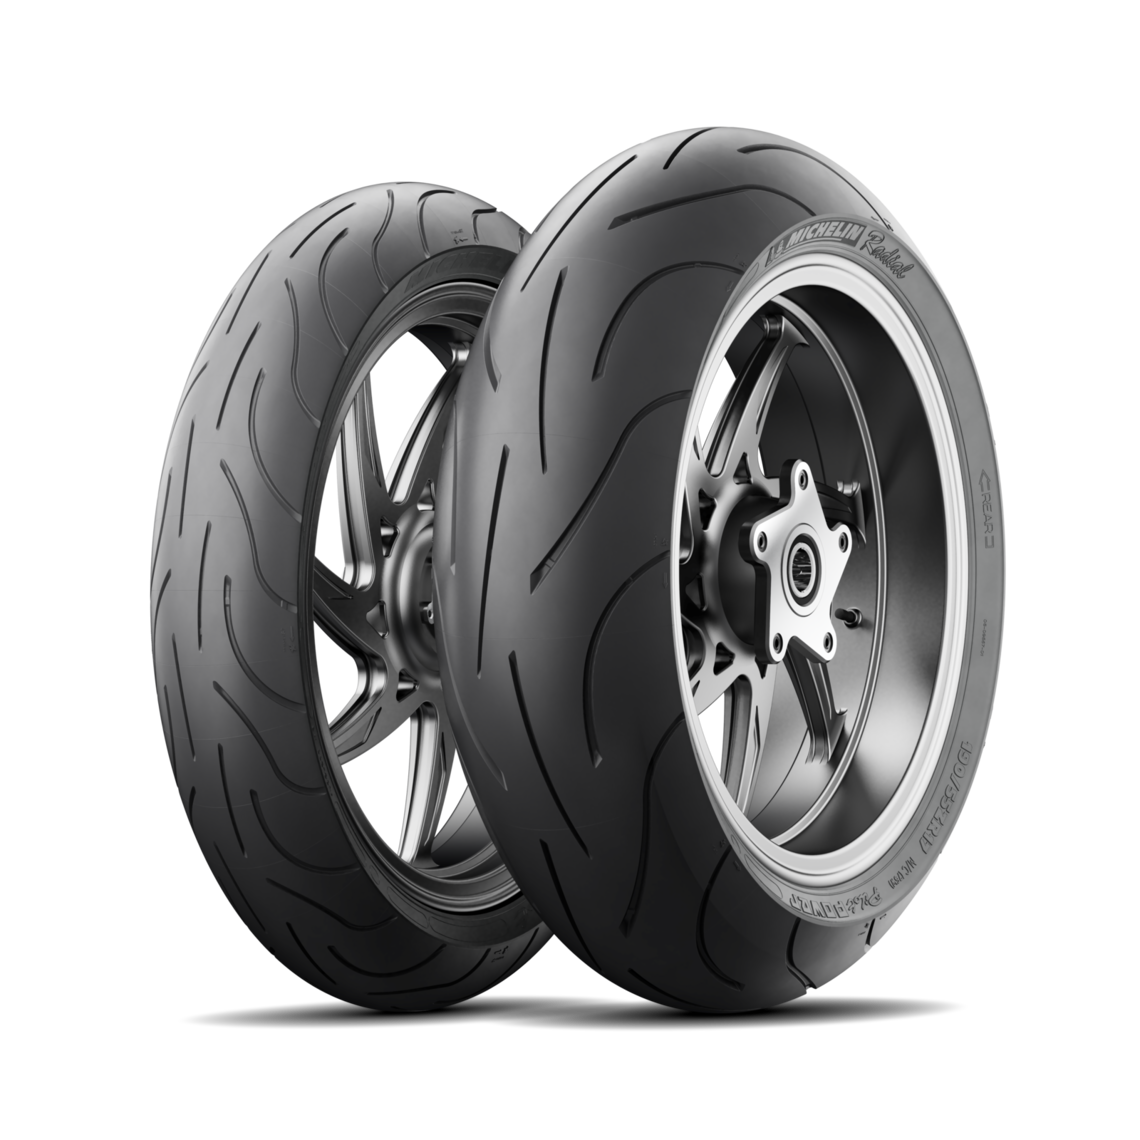 Michelin 180/55 ZR17 Pilot Power Rear Tyre for sale online